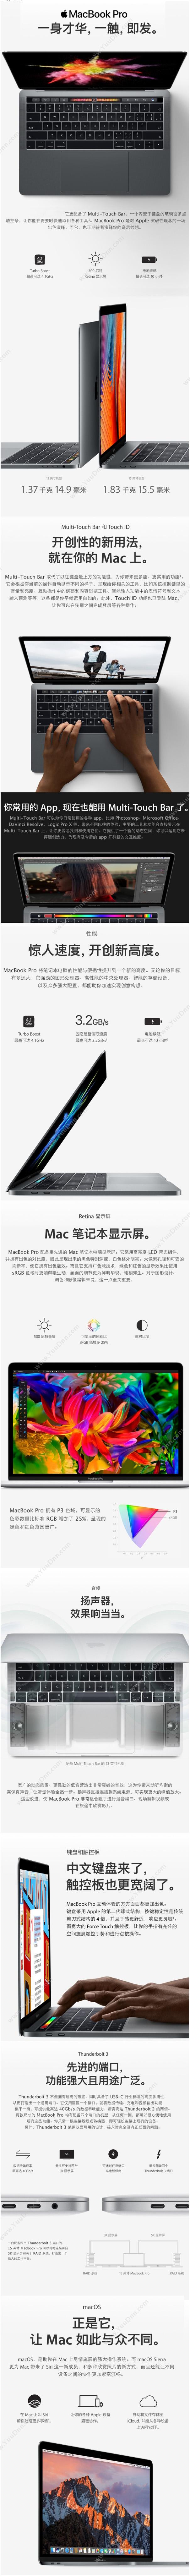 苹果 Apple MacBook Pro  MPXV2CH/A  13.3英寸Multi-Touch BarI58G256G1Y 深空灰 笔记本